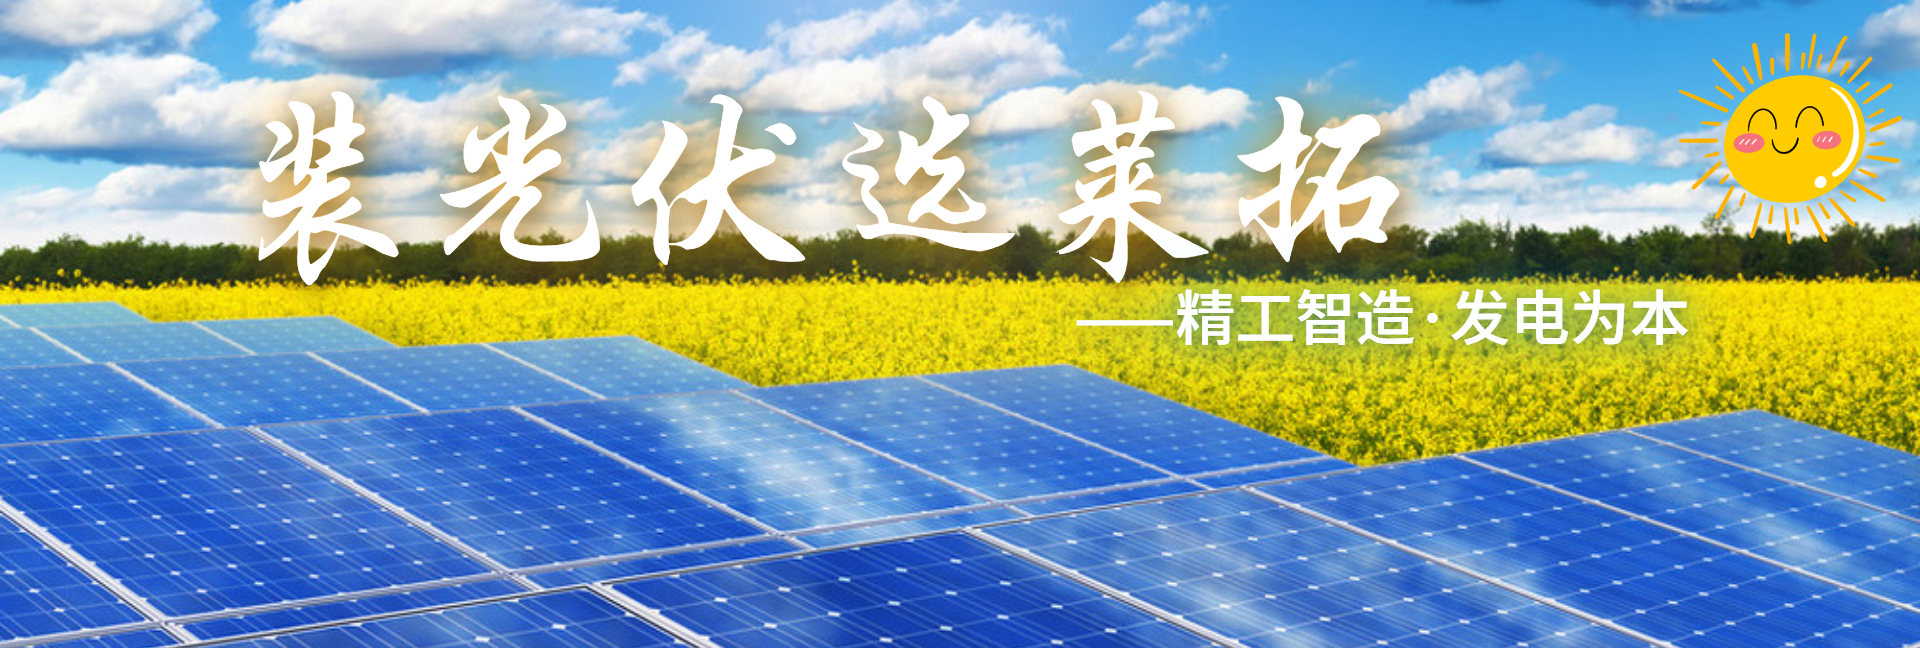 上海莱拓新能源科技有限公司